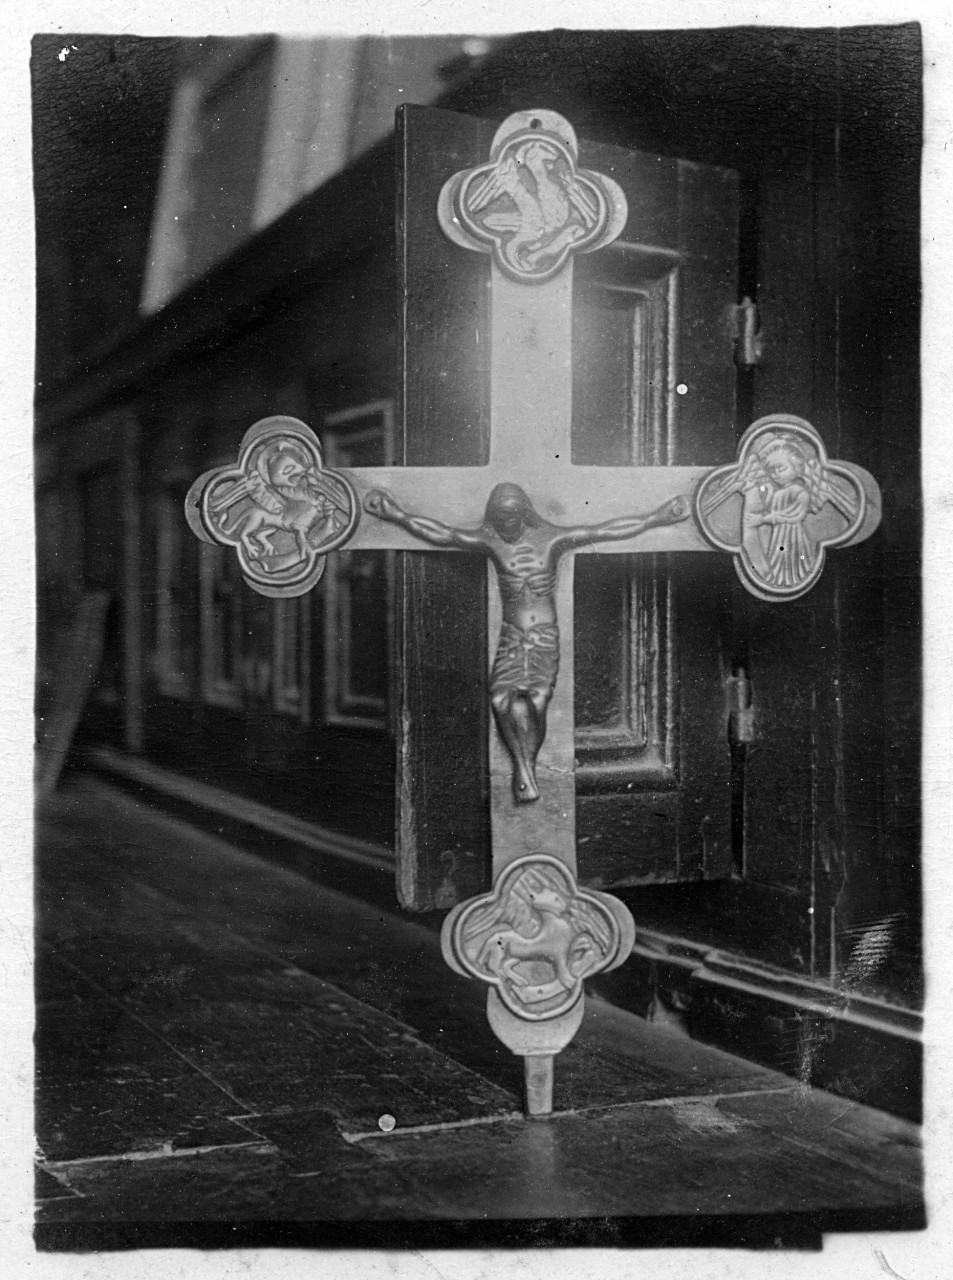 Castelfocogano - Rassina - Chiesa di San Martino (?) - Crocifisso in ottone (negativo) di Gabinetto fotografico del Polo Museale Fiorentino (laboratorio) - bottega aretina (primo quarto XX)